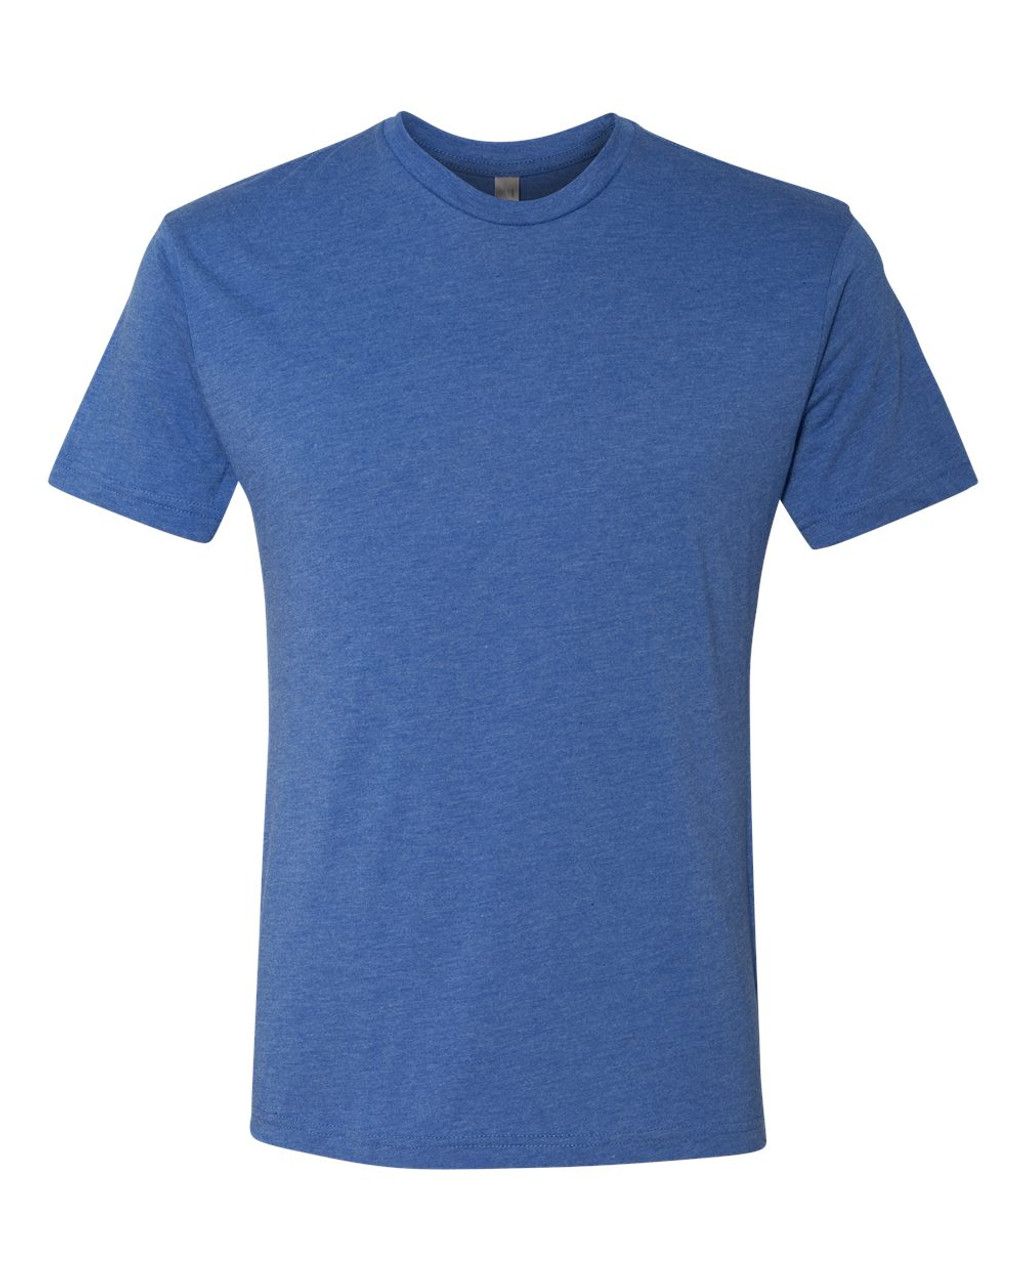 Tetra Classic T-Shirt – Tetra 1:27